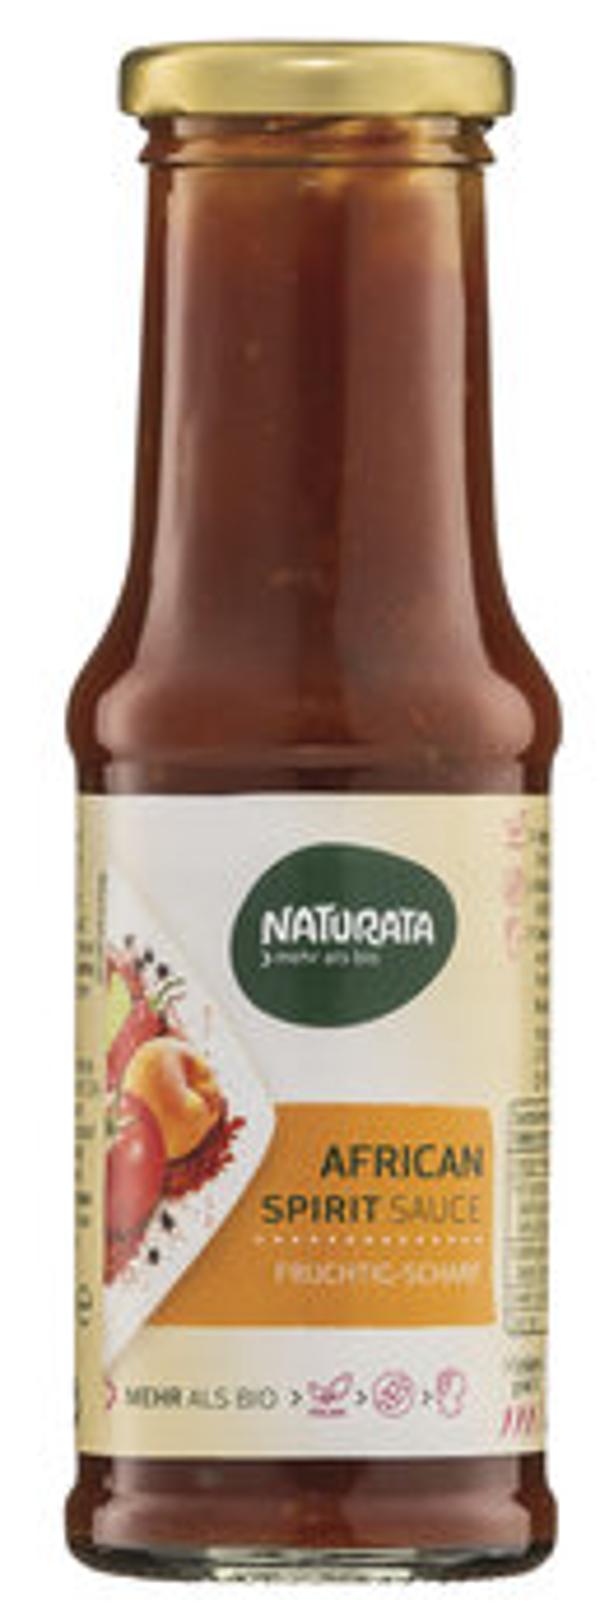 Produktfoto zu African Spirit Sauce, Exotisch scharf 0,25l